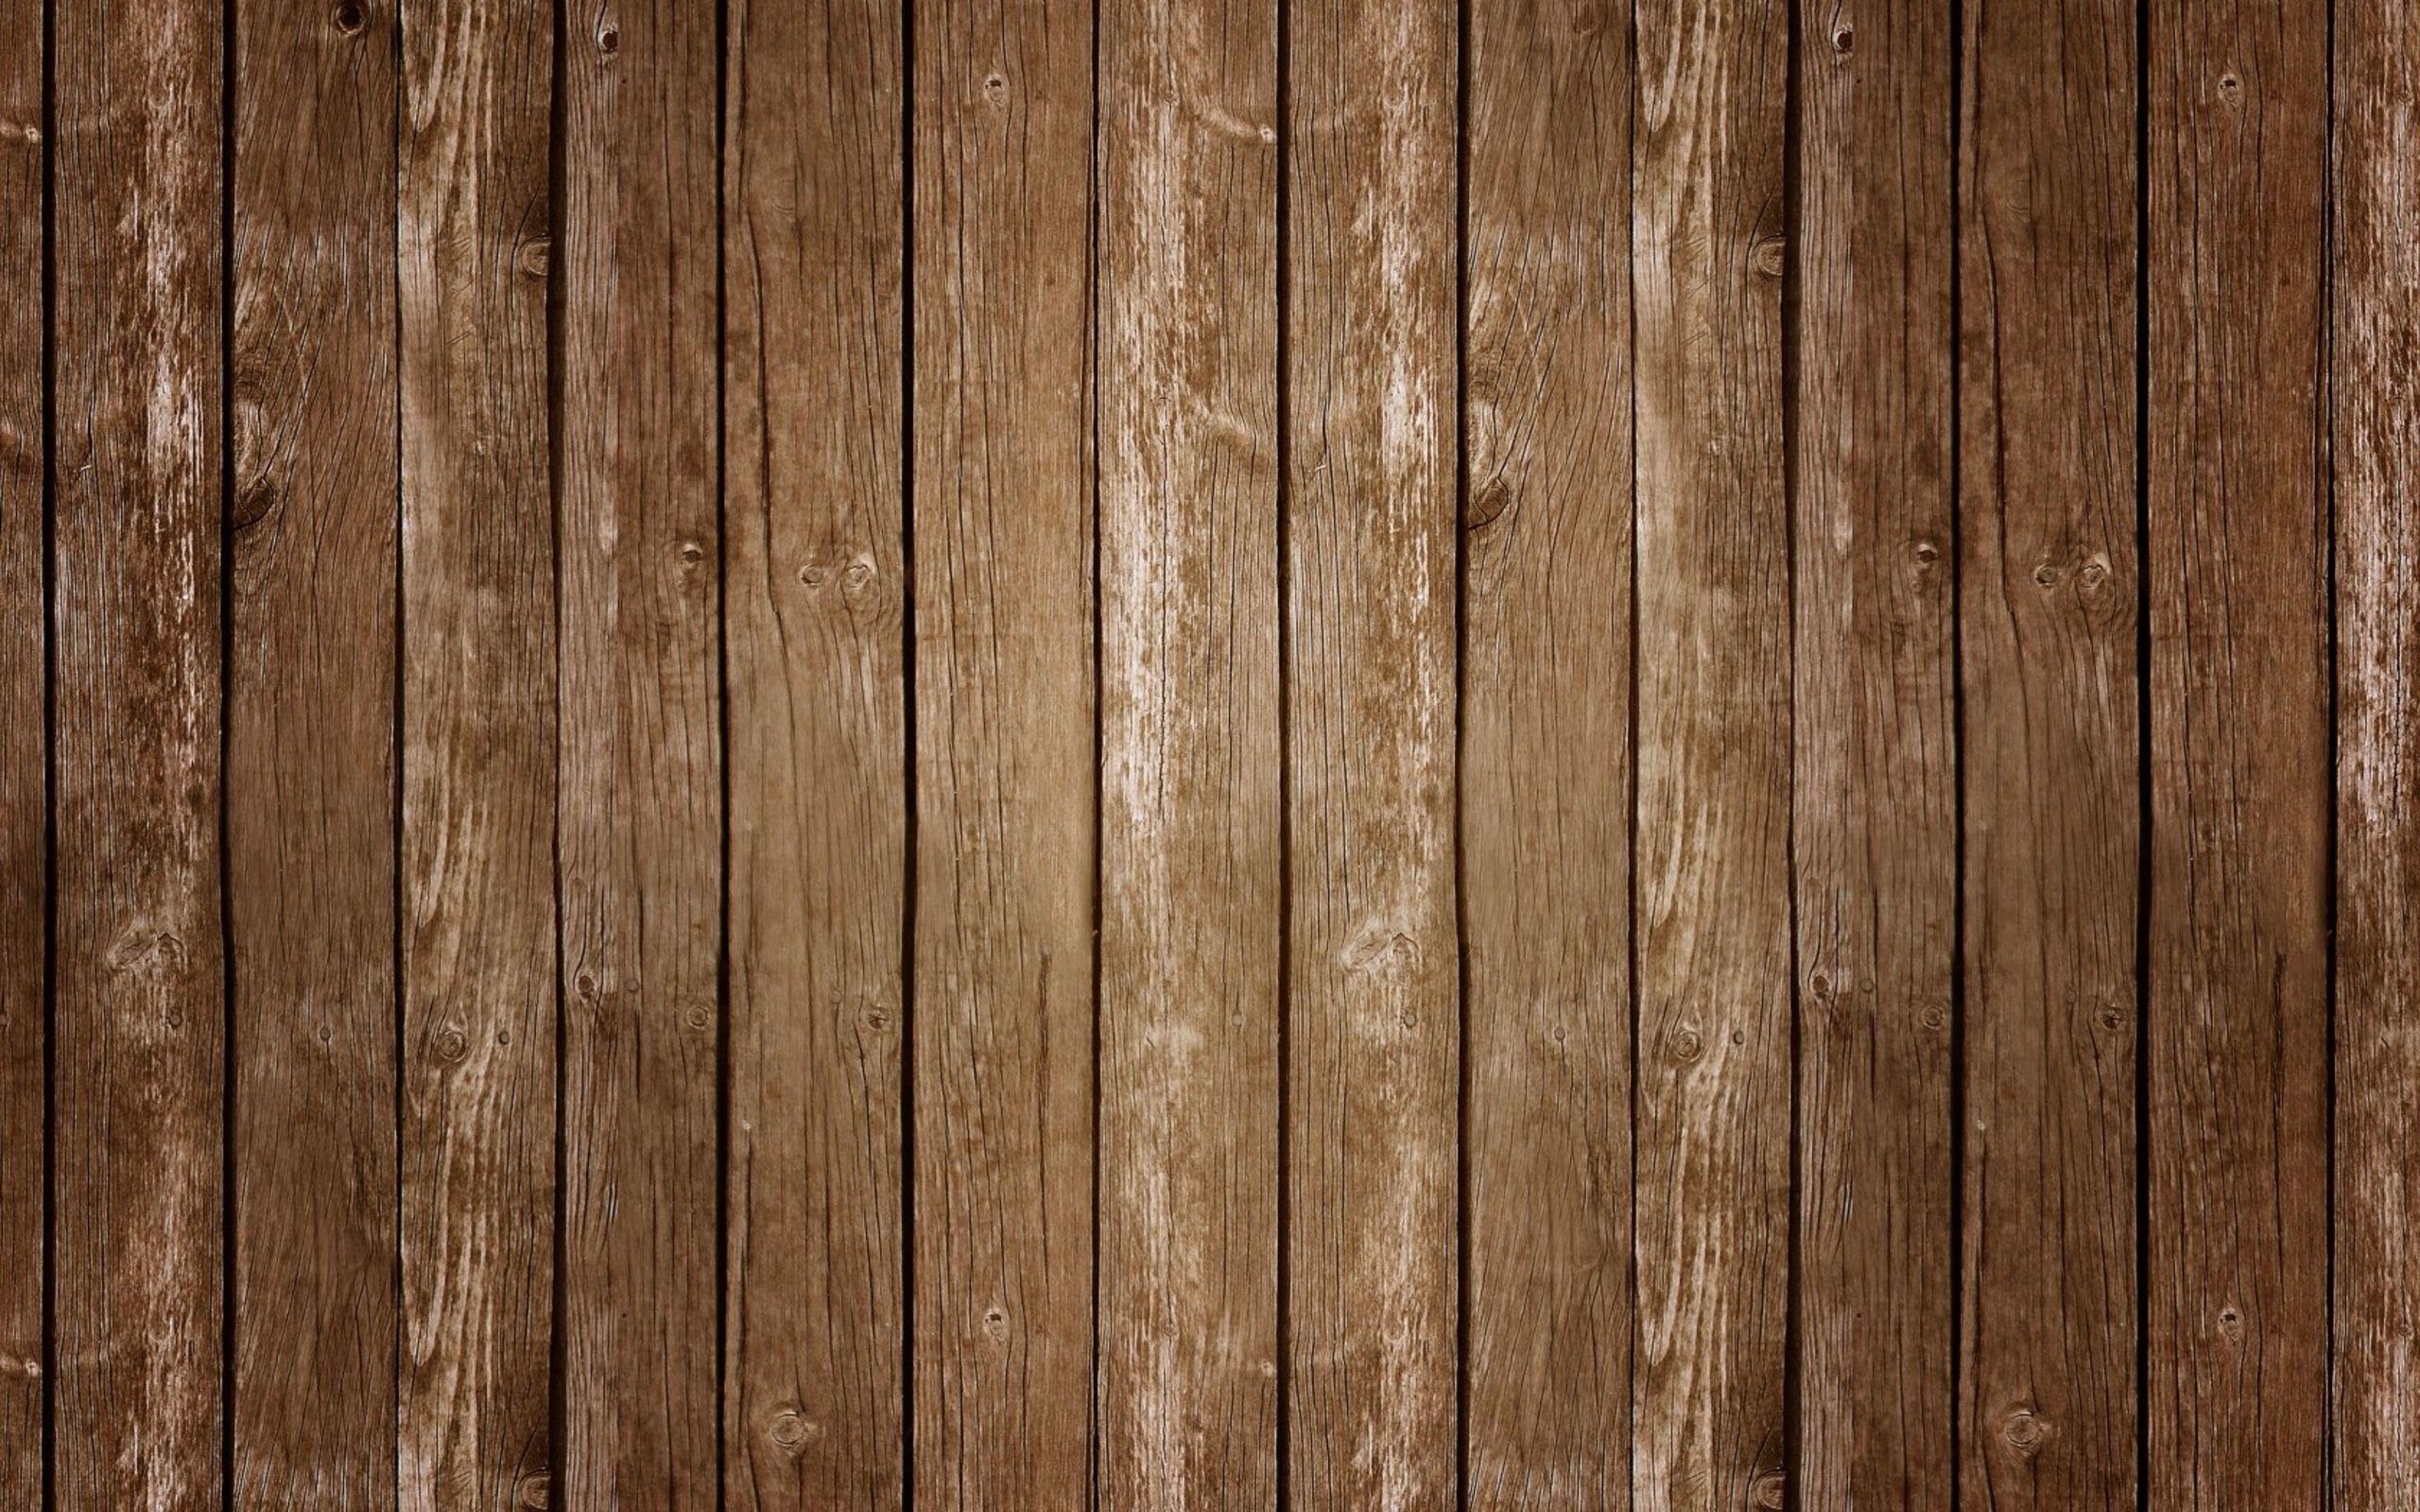 Hình nền gỗ là lựa chọn lý tưởng cho những ai yêu thích thiết kế đơn giản nhưng vẫn sang trọng. Những hình ảnh về gỗ tự nhiên, với những đường vân trang nhã, sẽ khiến không gian máy tính của bạn thêm đẹp và ấm cúng.